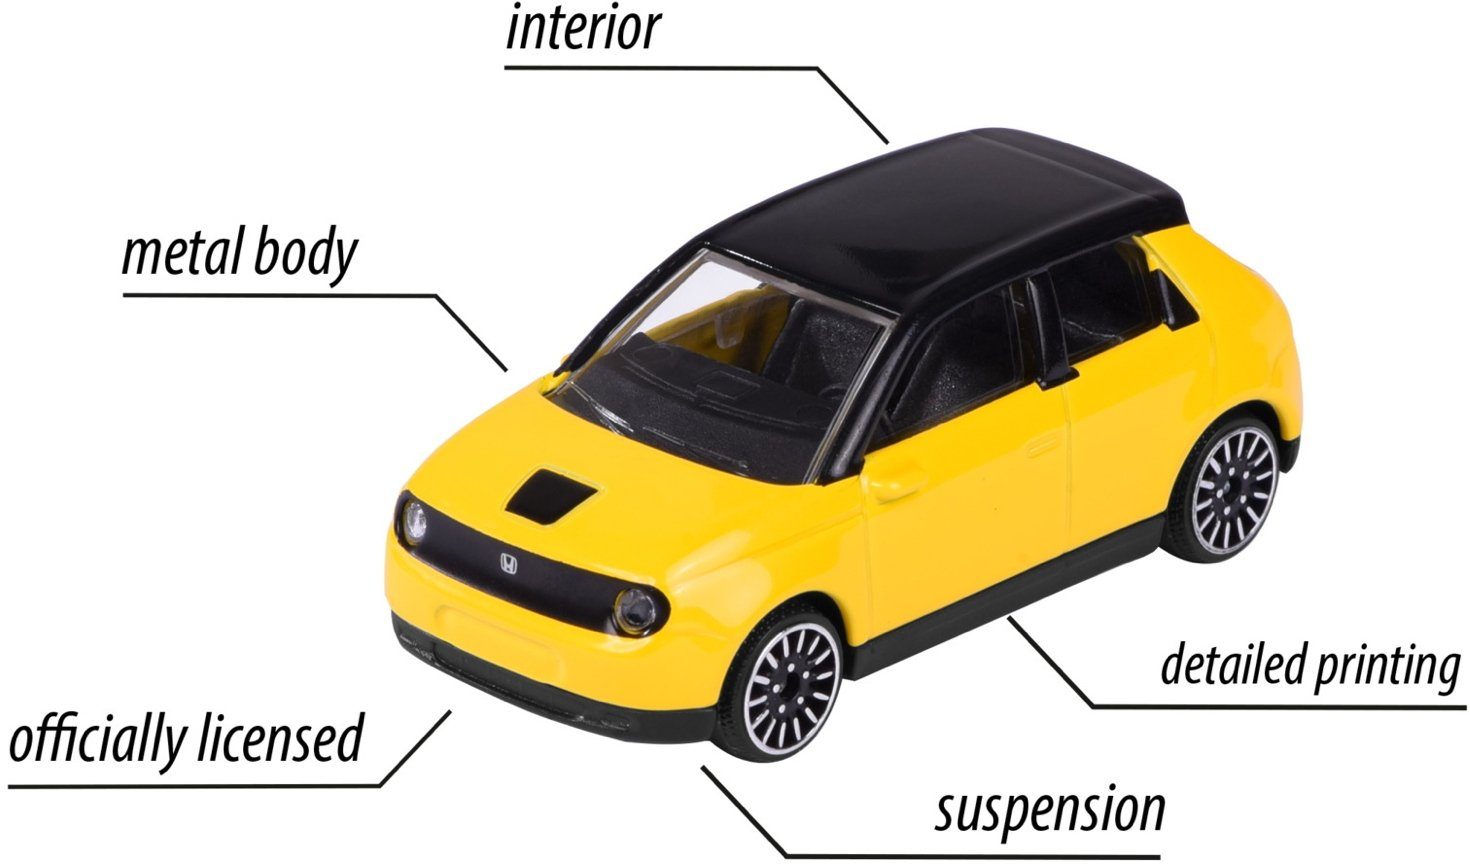 majORETTE Street Honda E gelb Spielzeug-Auto Cars Spielzeugauto 212053051Q10